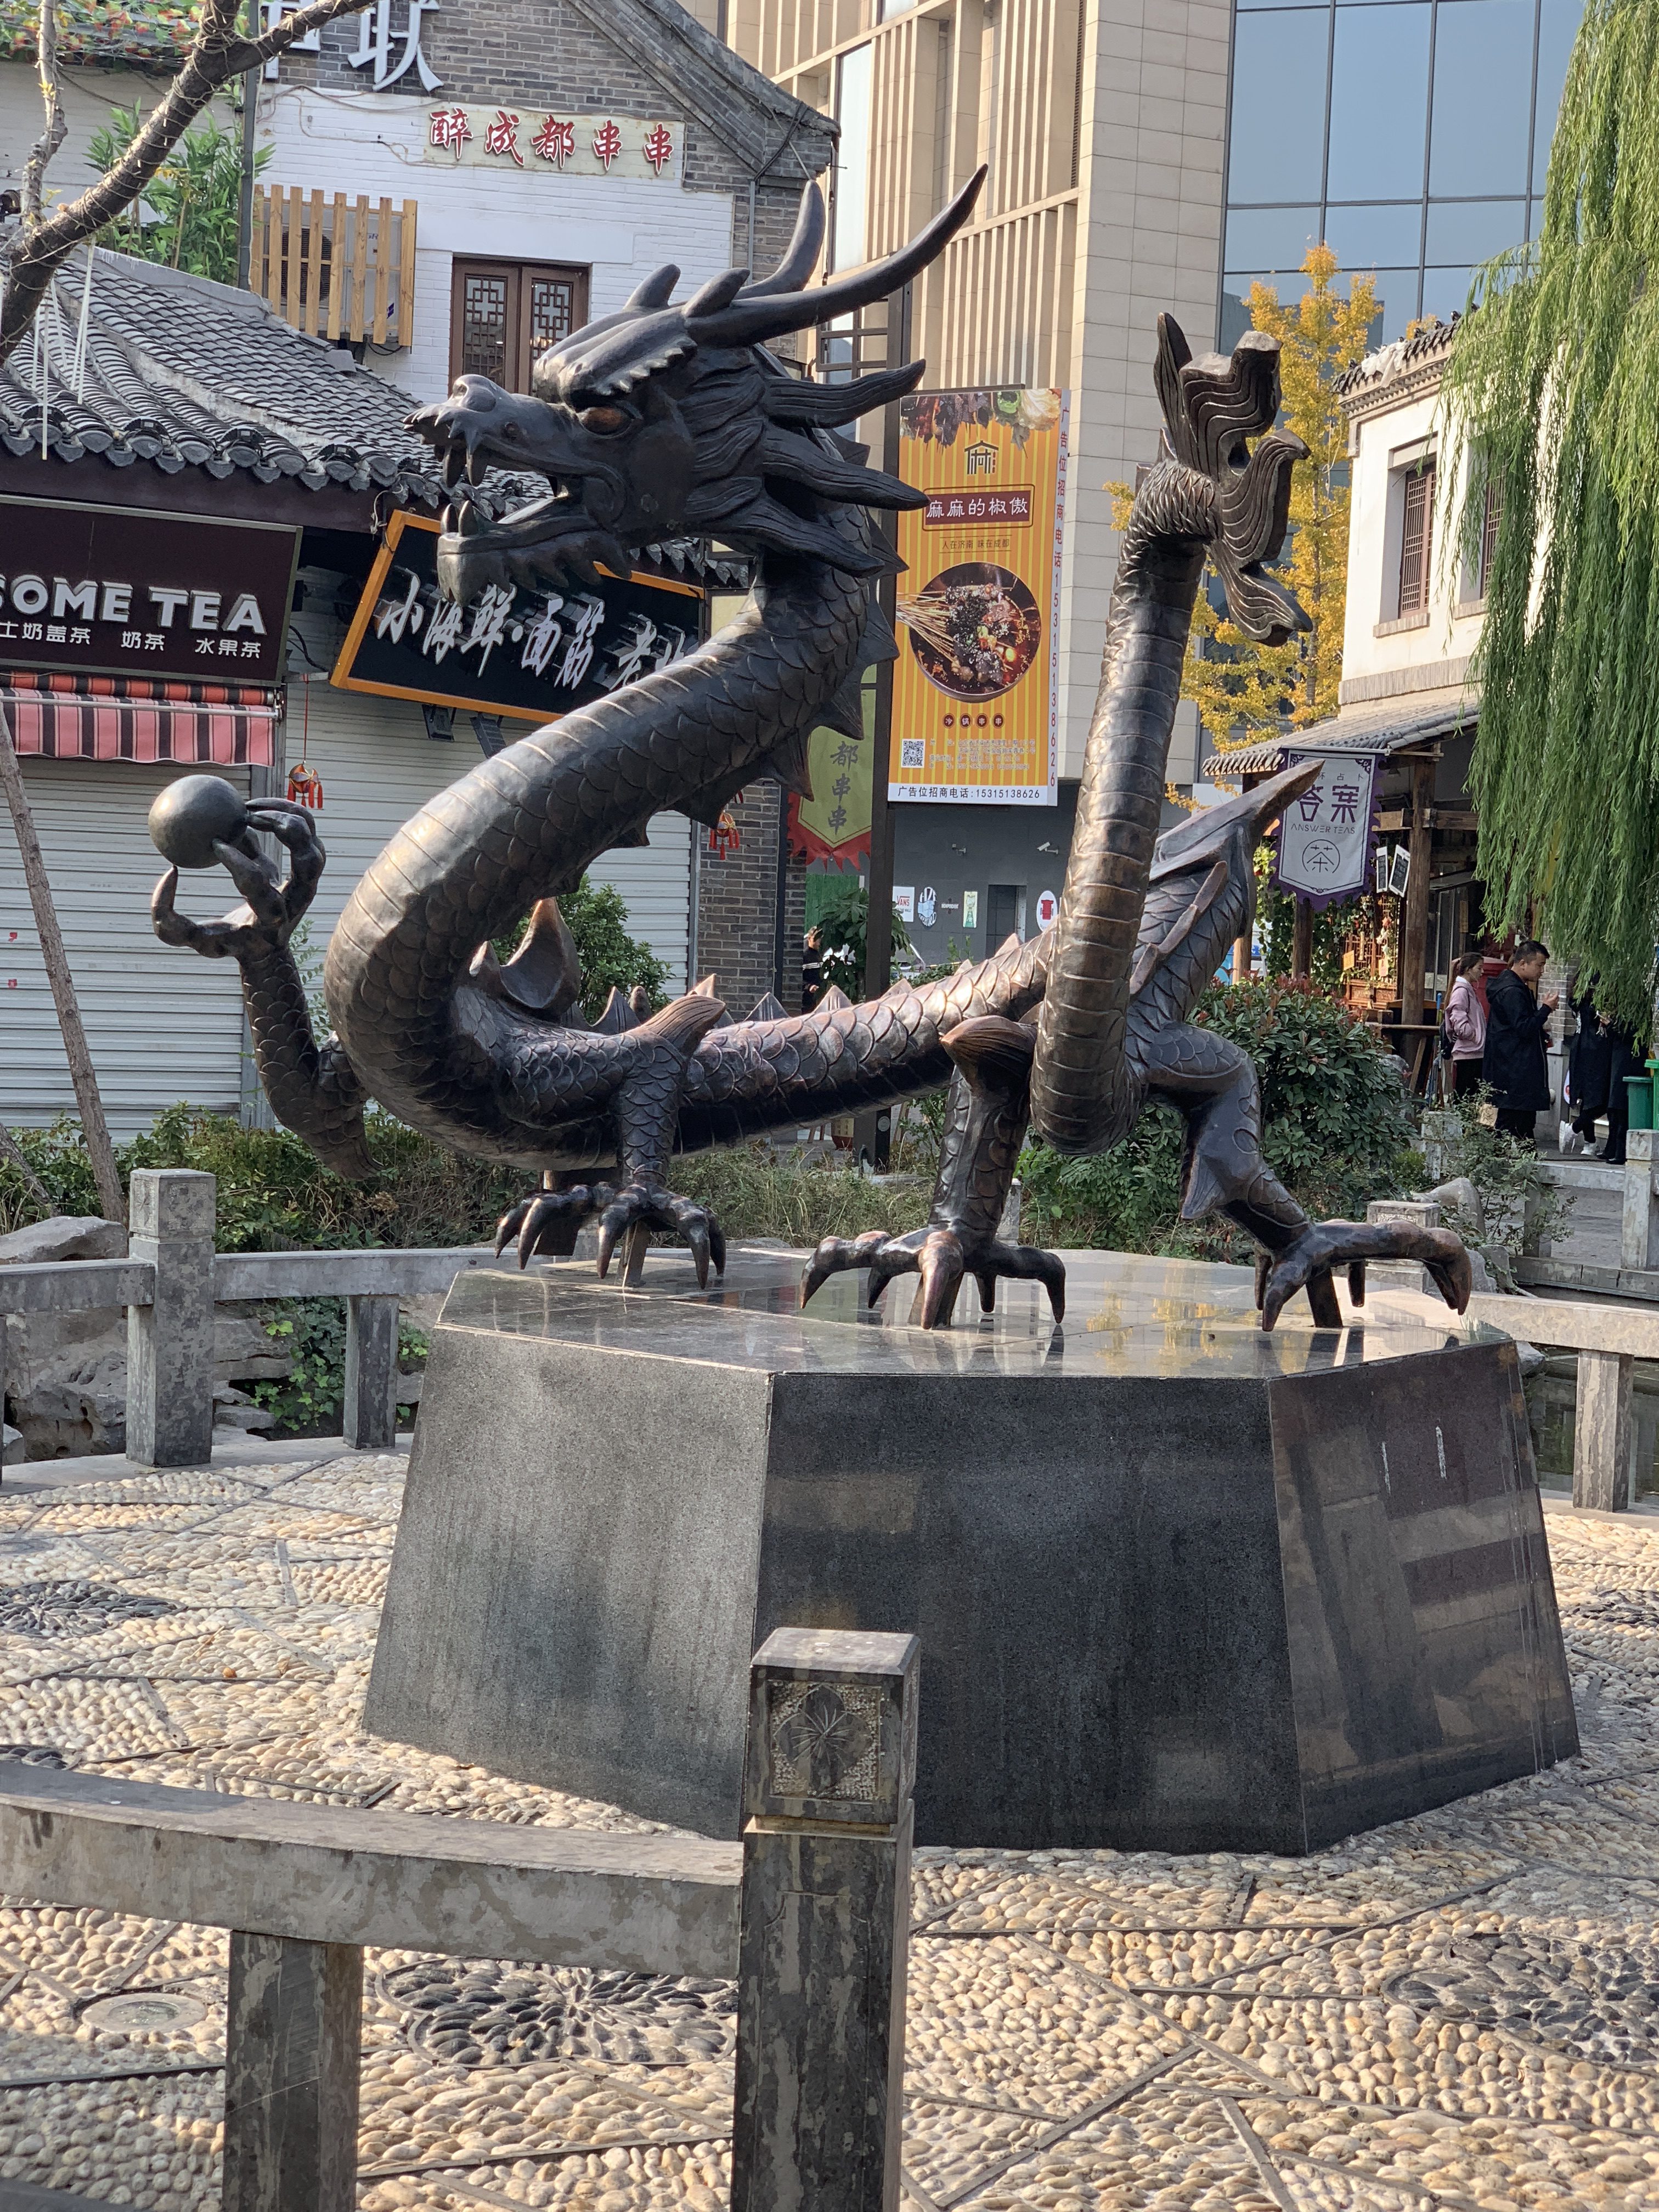 Shandong dragon